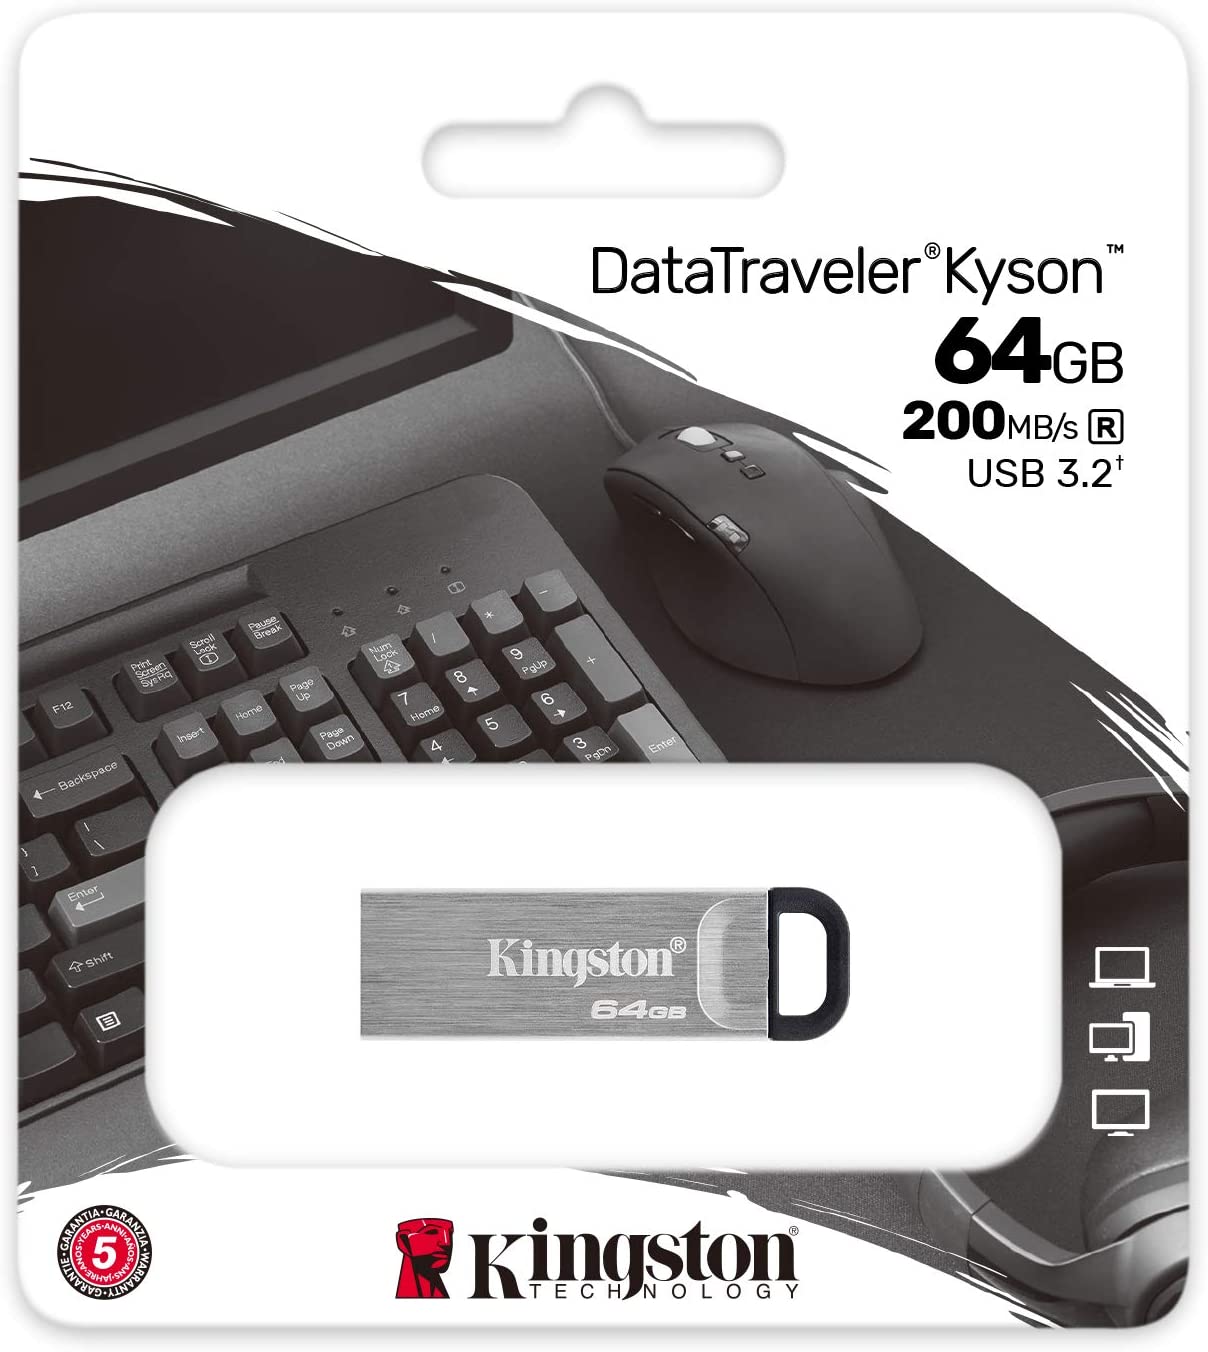 PENDRIVE KINGSTON DT KYSON 64GB USB3.2